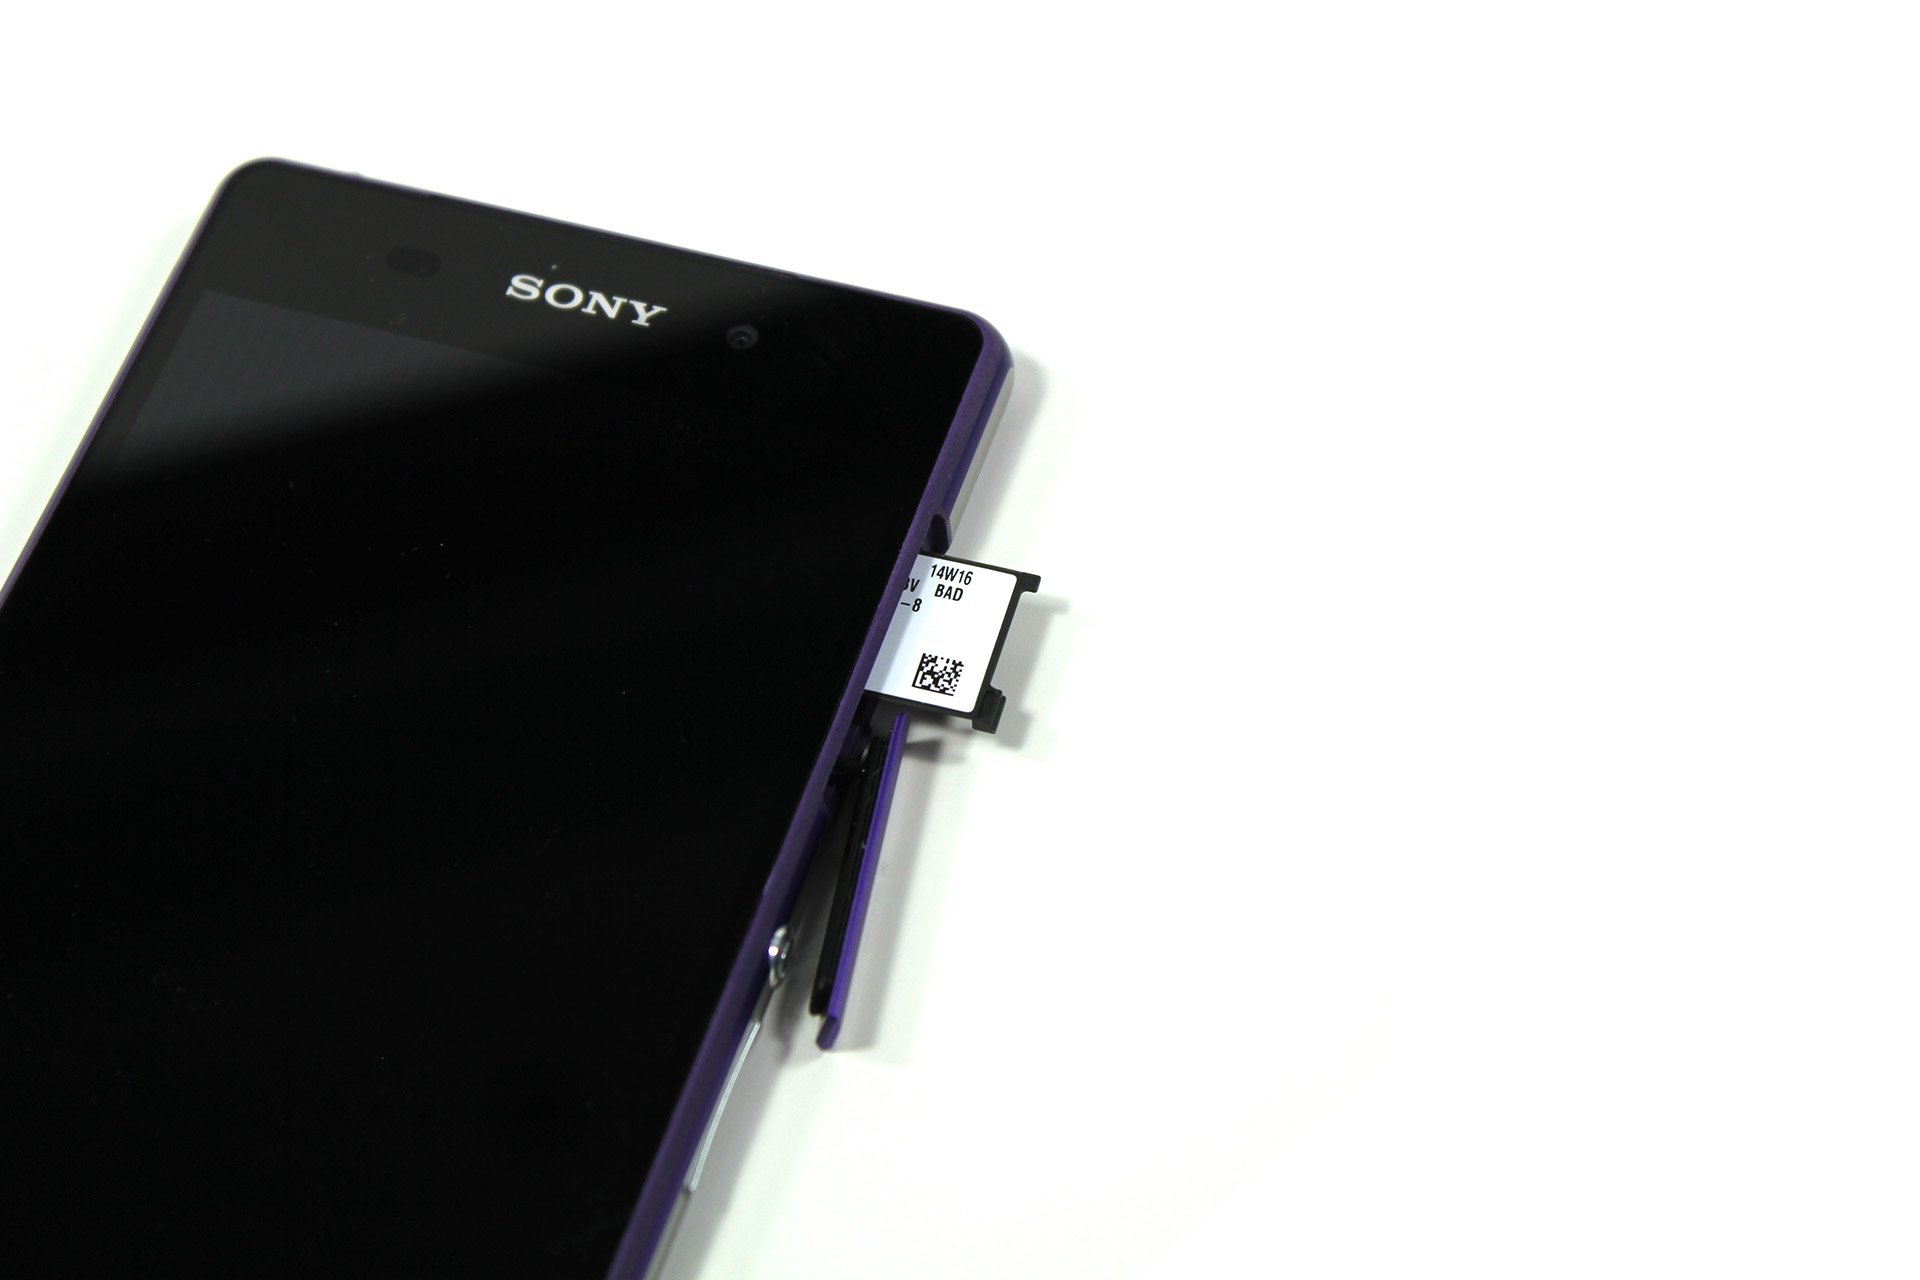 Sony Xperia Z2 - Kartenslot offen